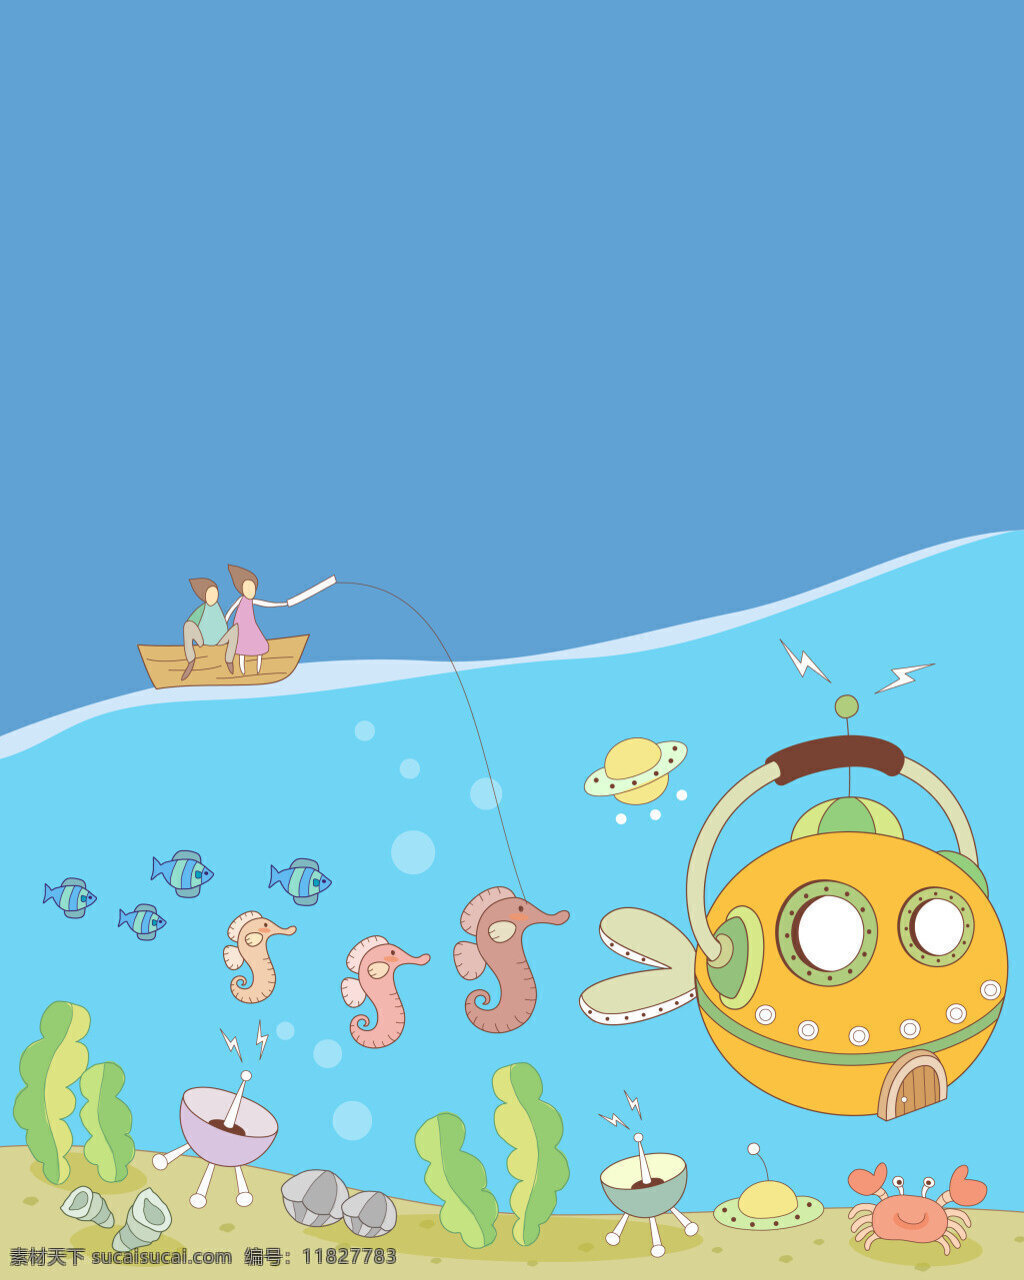 背景 船 创意 儿童插画 儿童节日 海报 海底世界 海洋 蓝色 矢量 海底 世界 儿童 插画 鱼类 早教